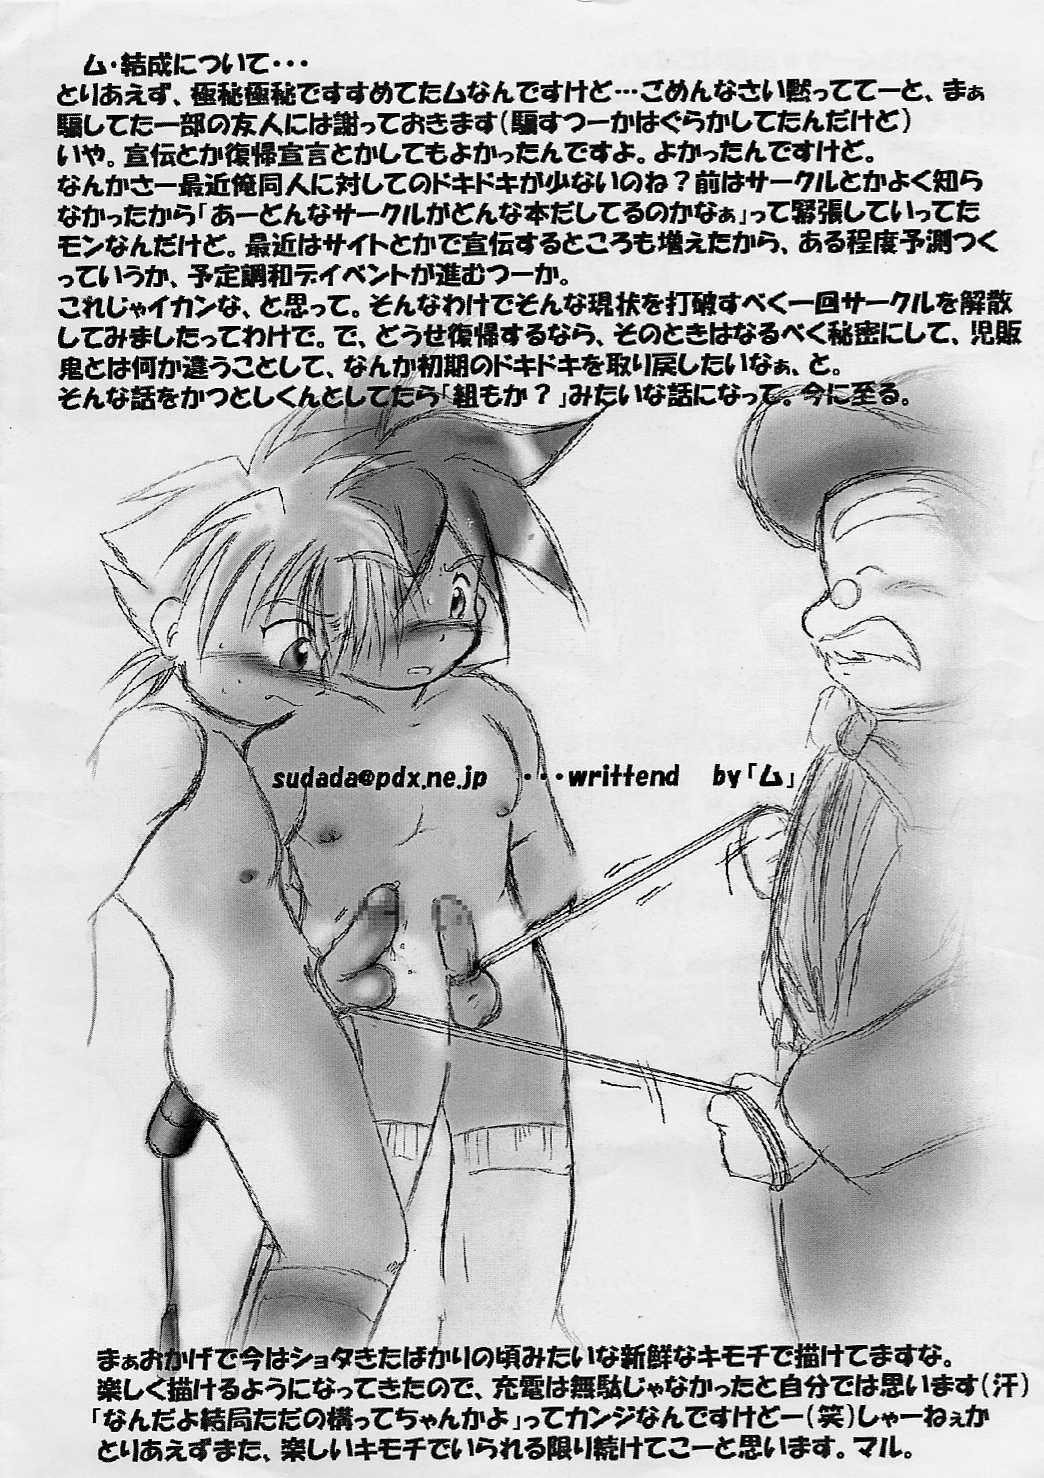 Hotwife Shotakatsu VOL 1 - Naruto Hunter x hunter Bakusou kyoudai lets and go Rurouni kenshin | samurai x Fuck - Page 24